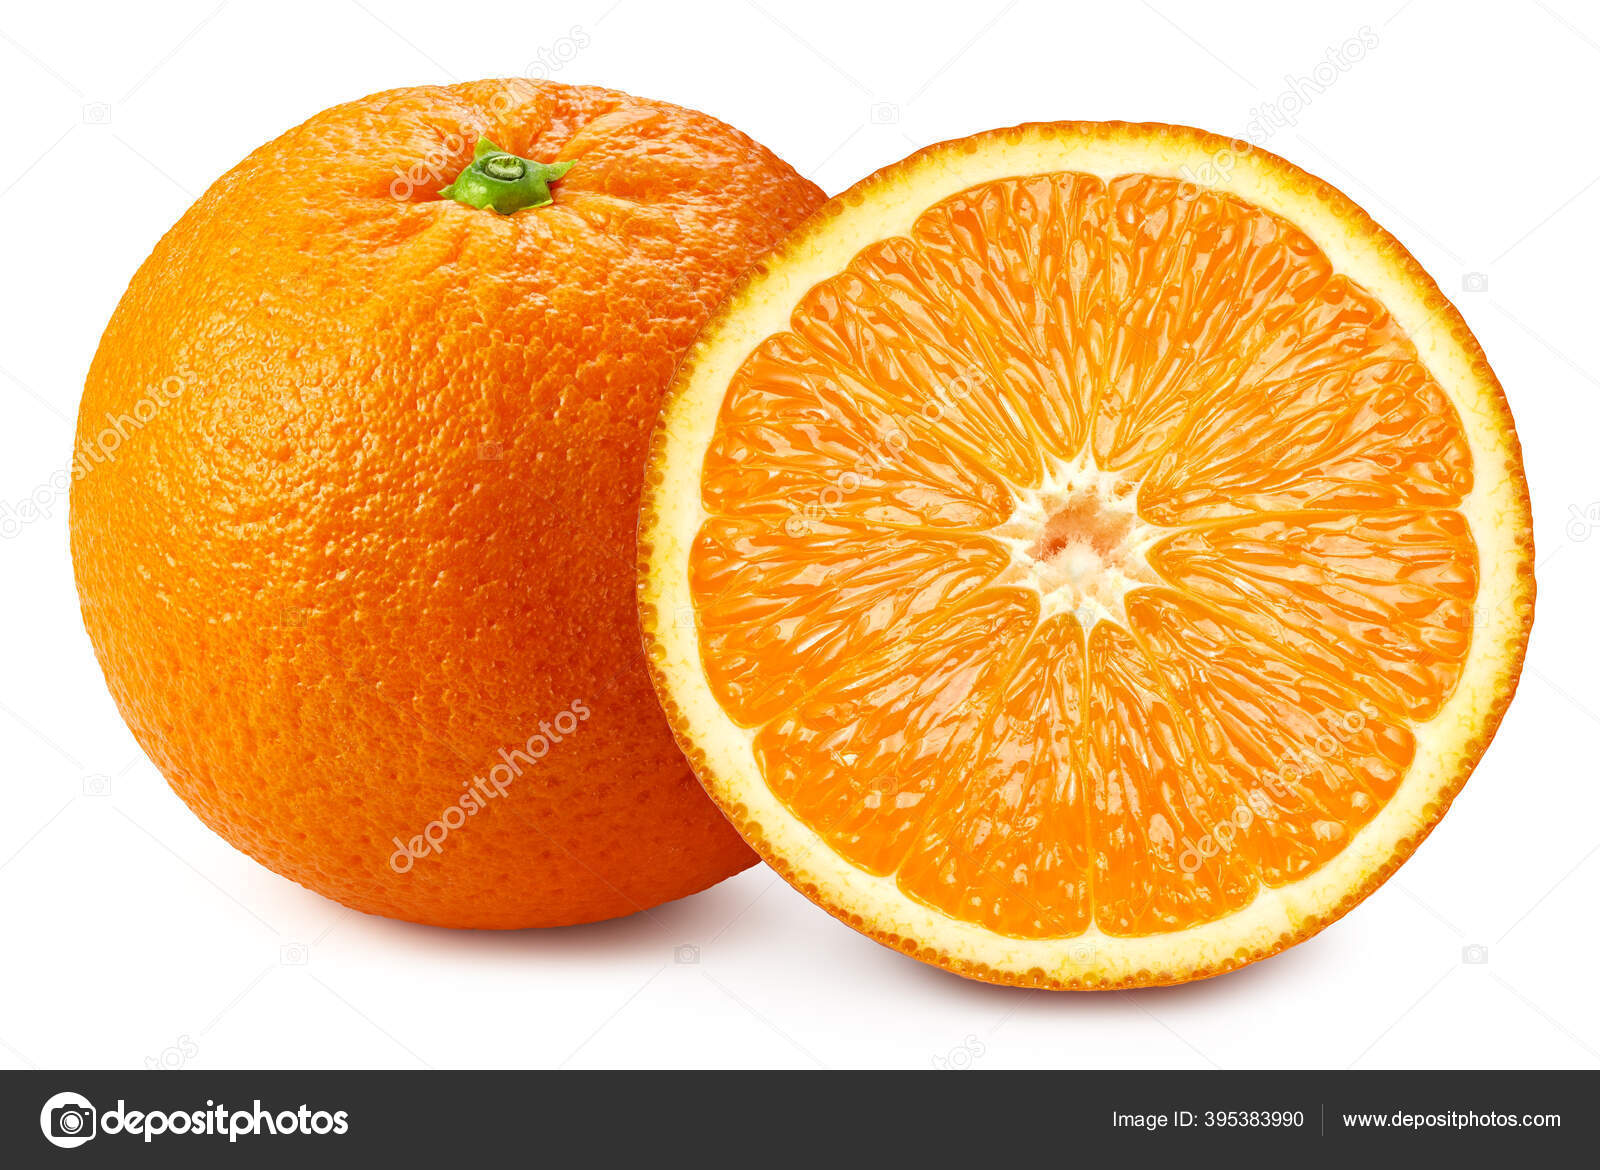 オレンジ色の果物写真素材 ロイヤリティフリーオレンジ色の果物画像 Depositphotos